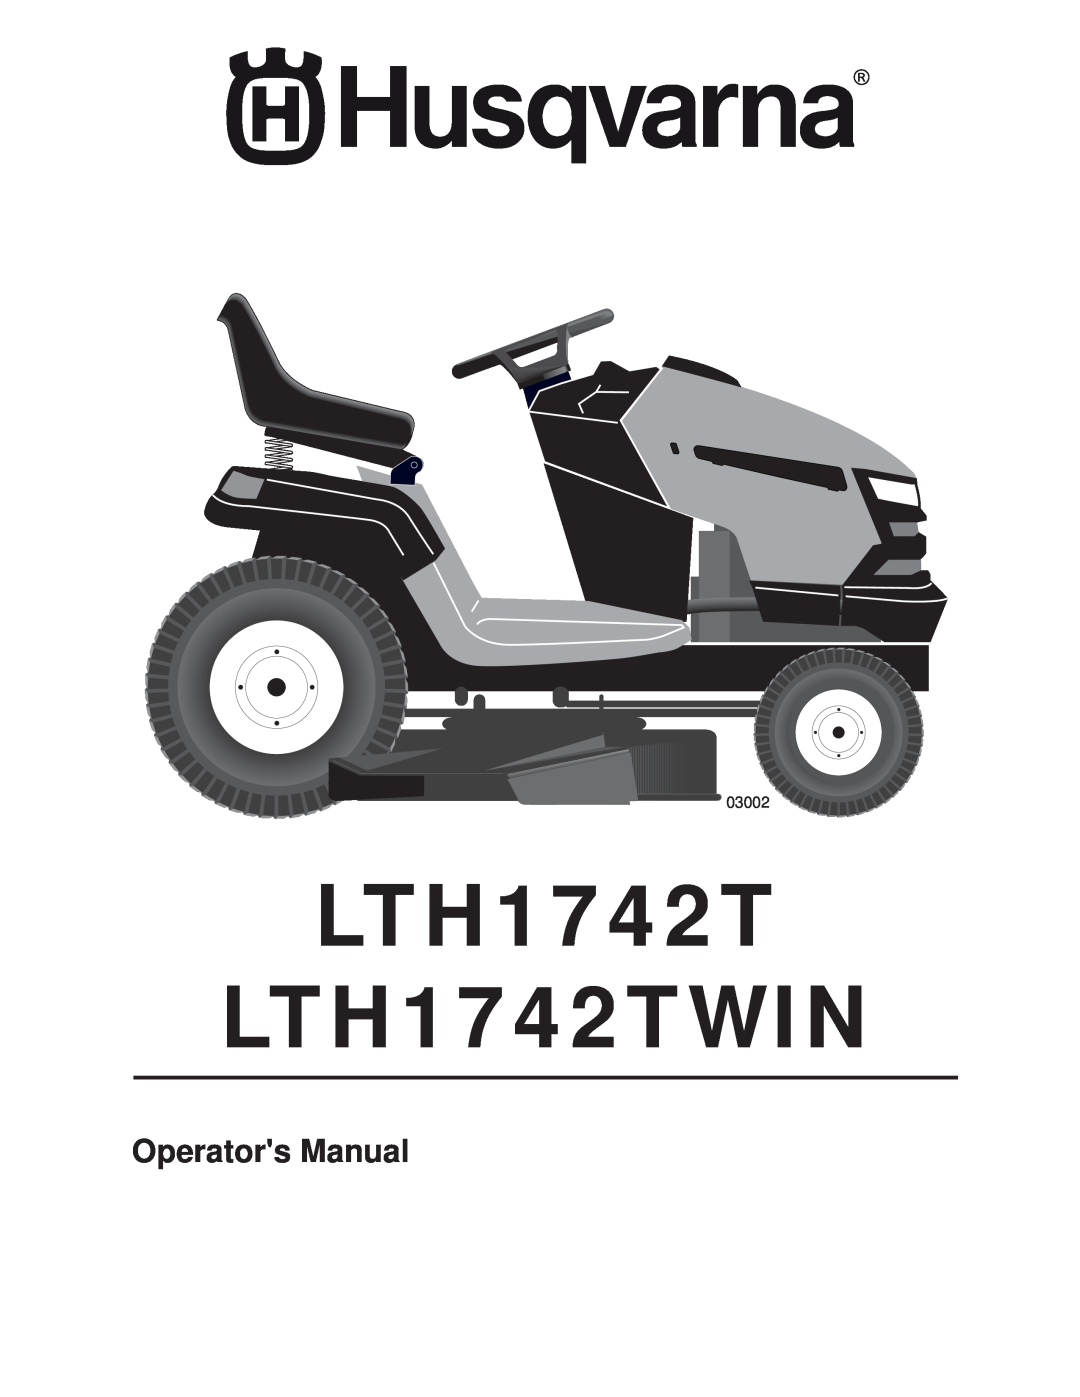 Husqvarna manual LTH1742T LTH1742TWIN, Operators Manual, 03002 